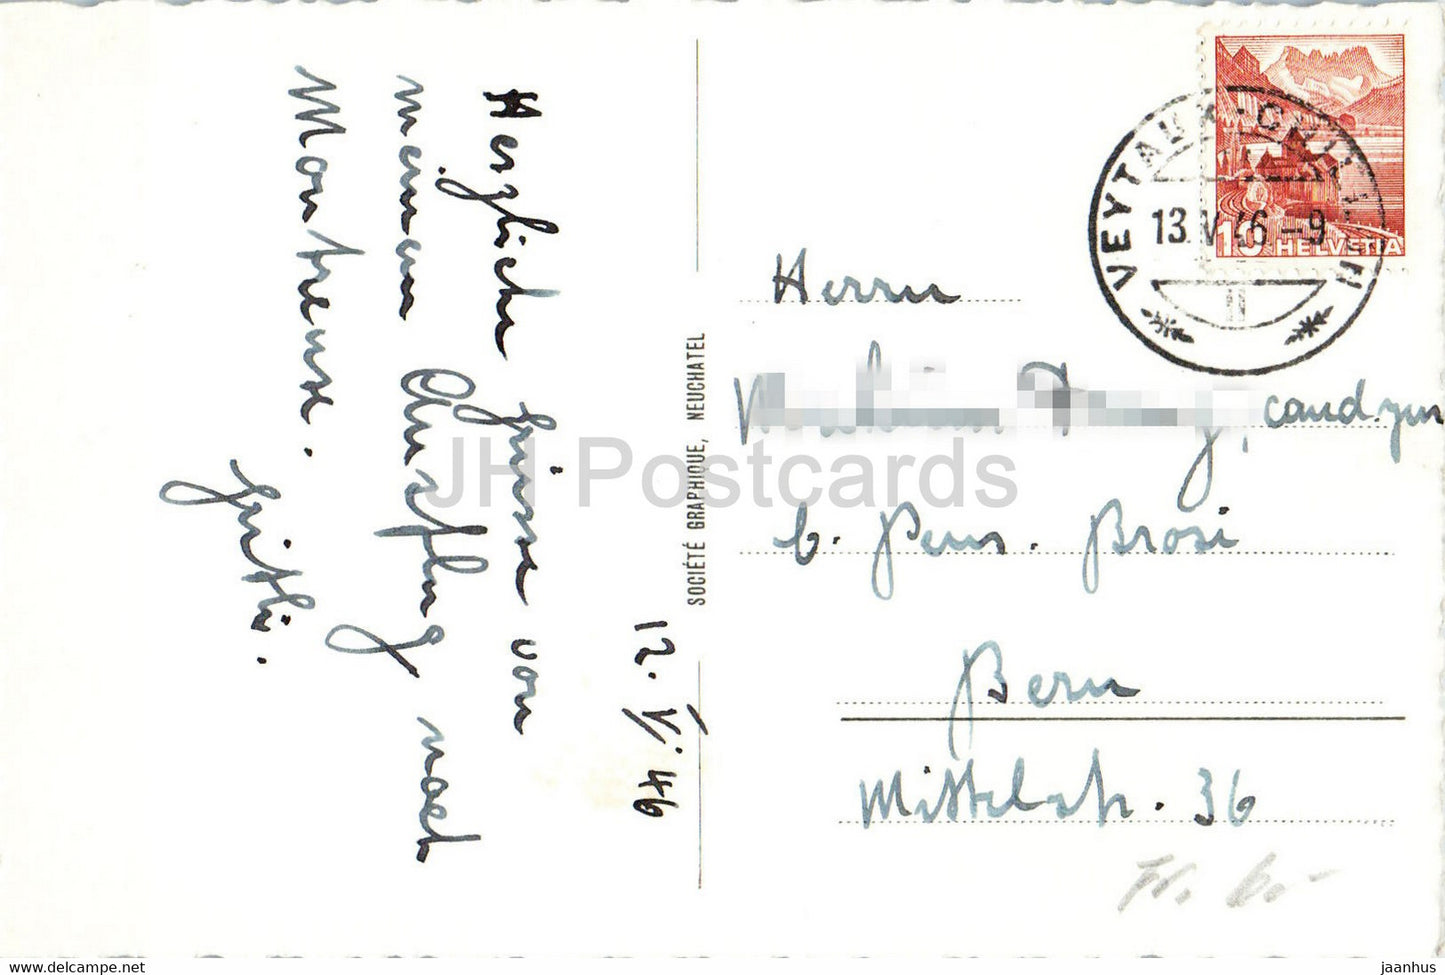 Chateau de Chillon et Dents du Midi - Vögel Schwan - Segelboot - Schloss - 7737 1946 - alte Postkarte - Schweiz - gebraucht